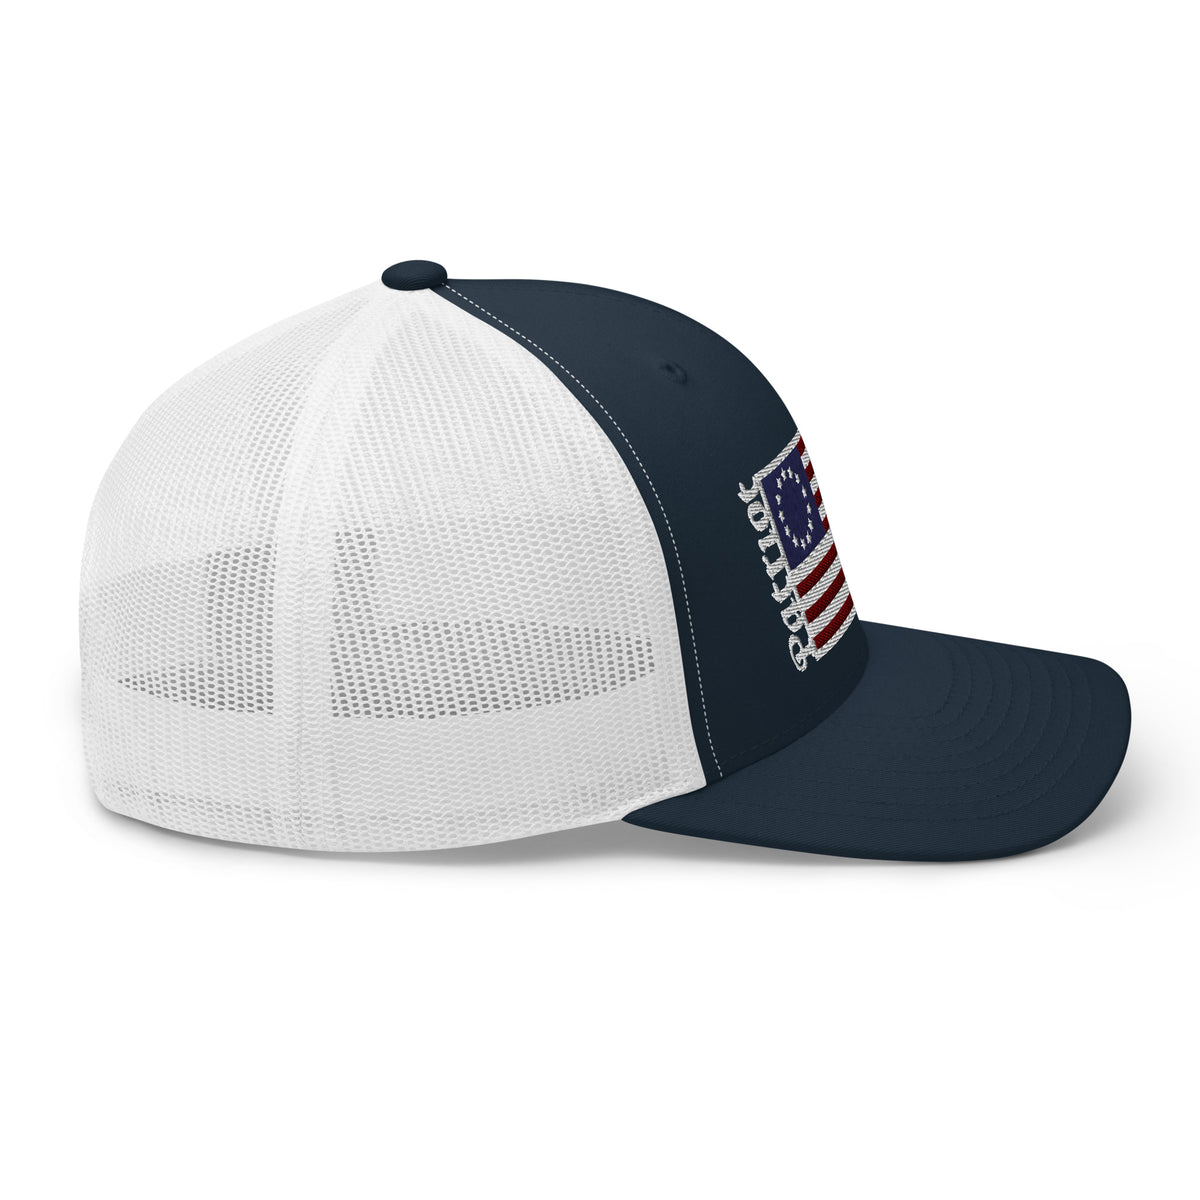 Patriot Betsy Ross Flag Snapback Hat